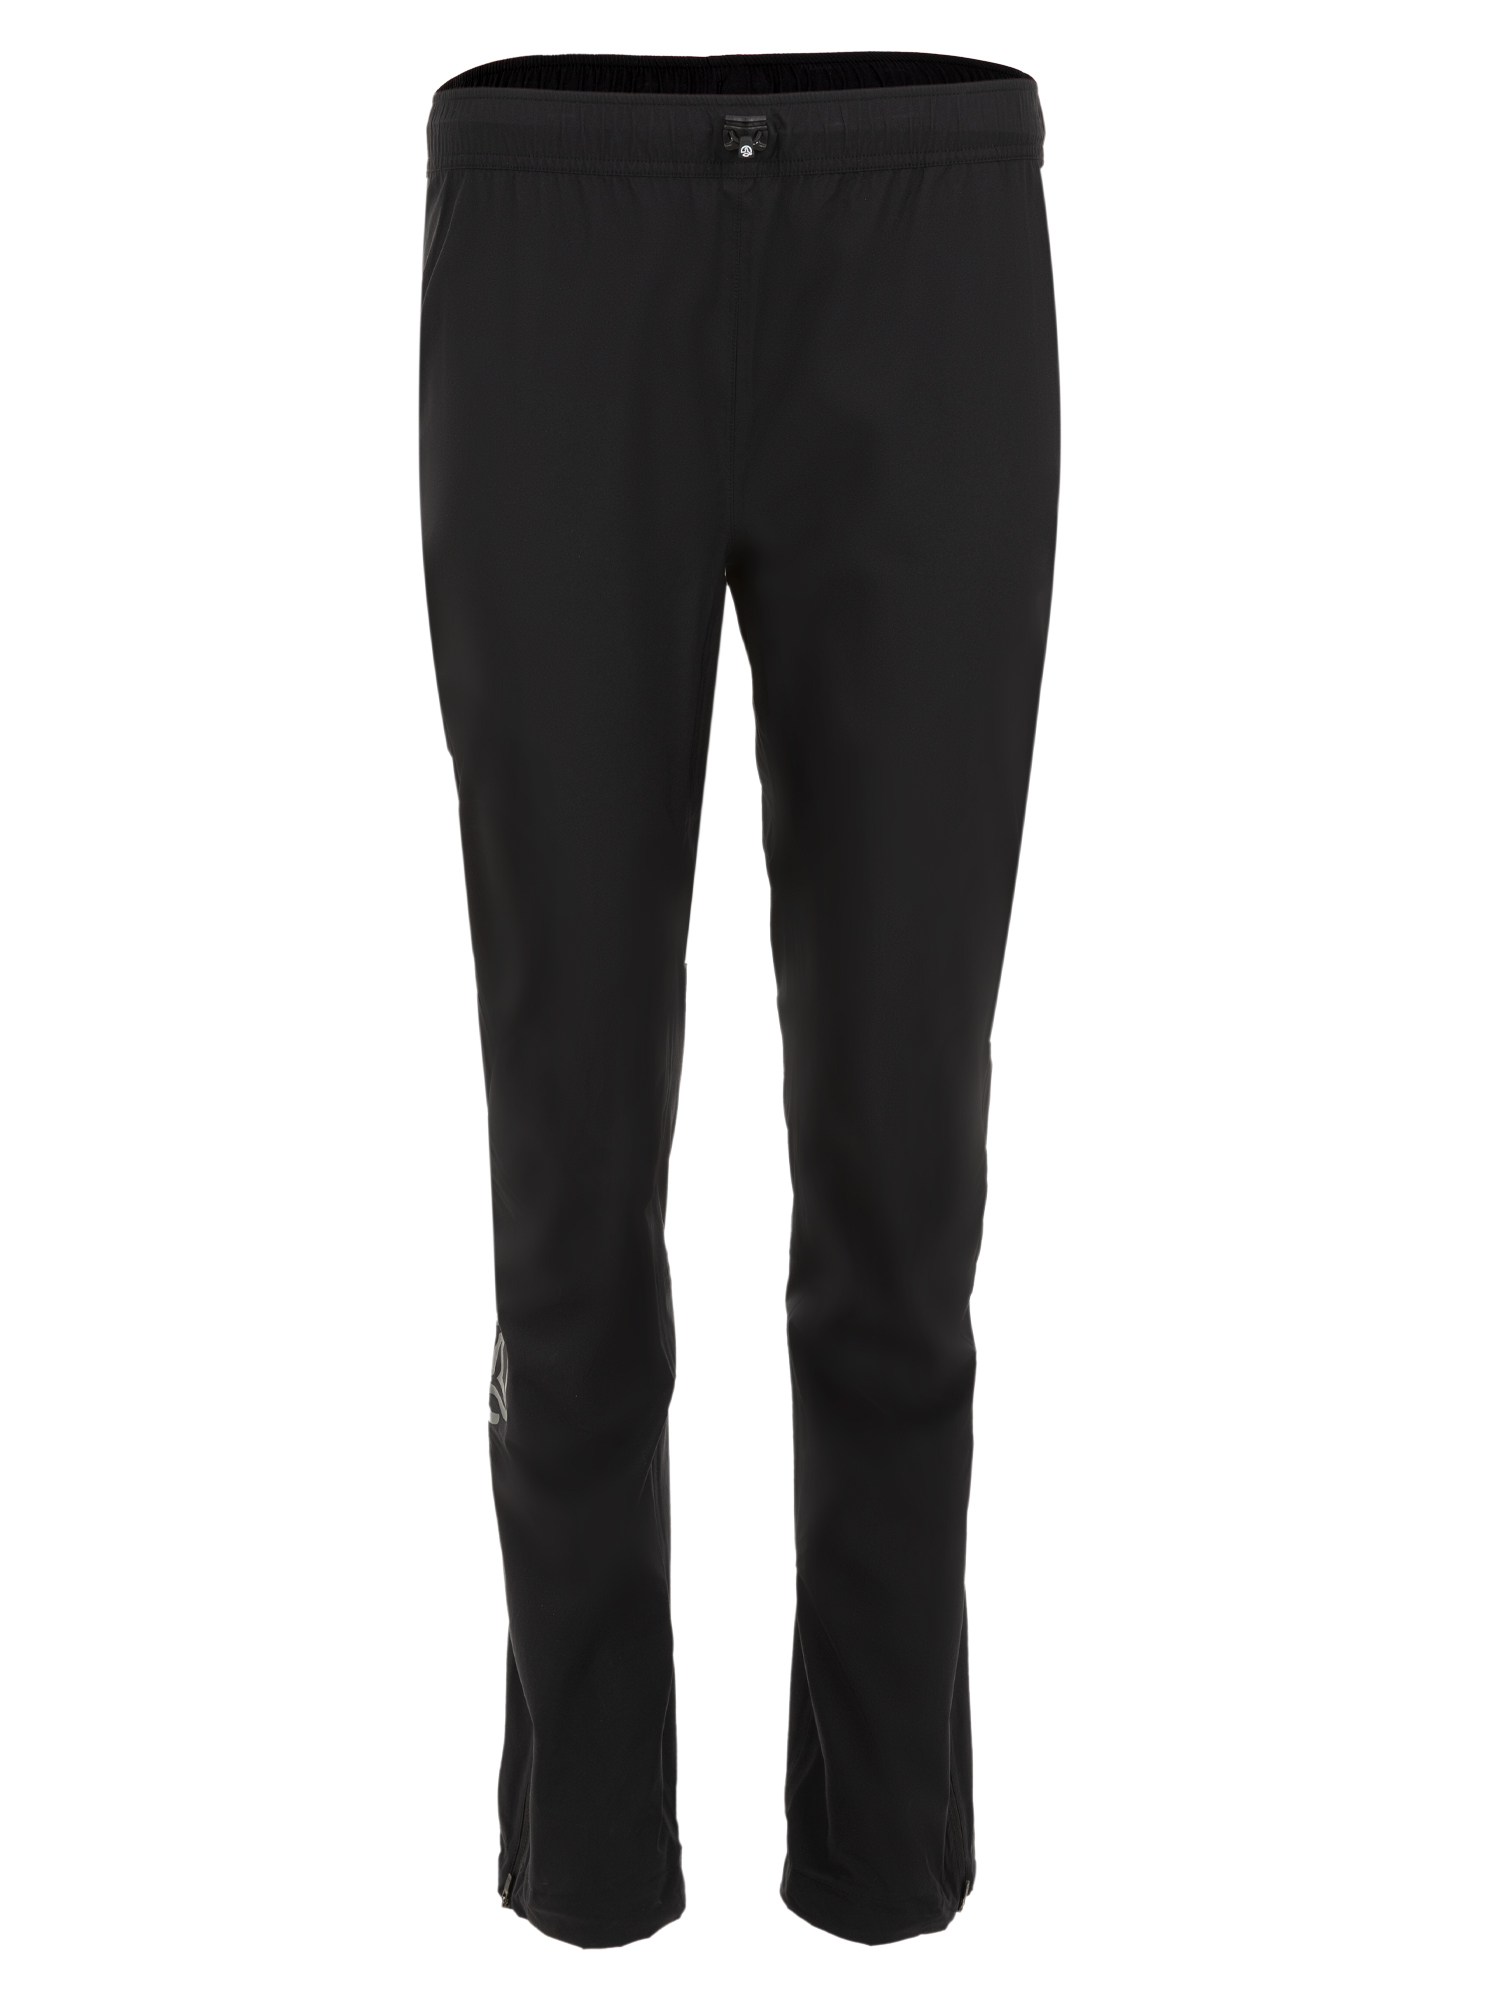 Спортивные брюки женские Ternua Cyclone Pt W черные XS